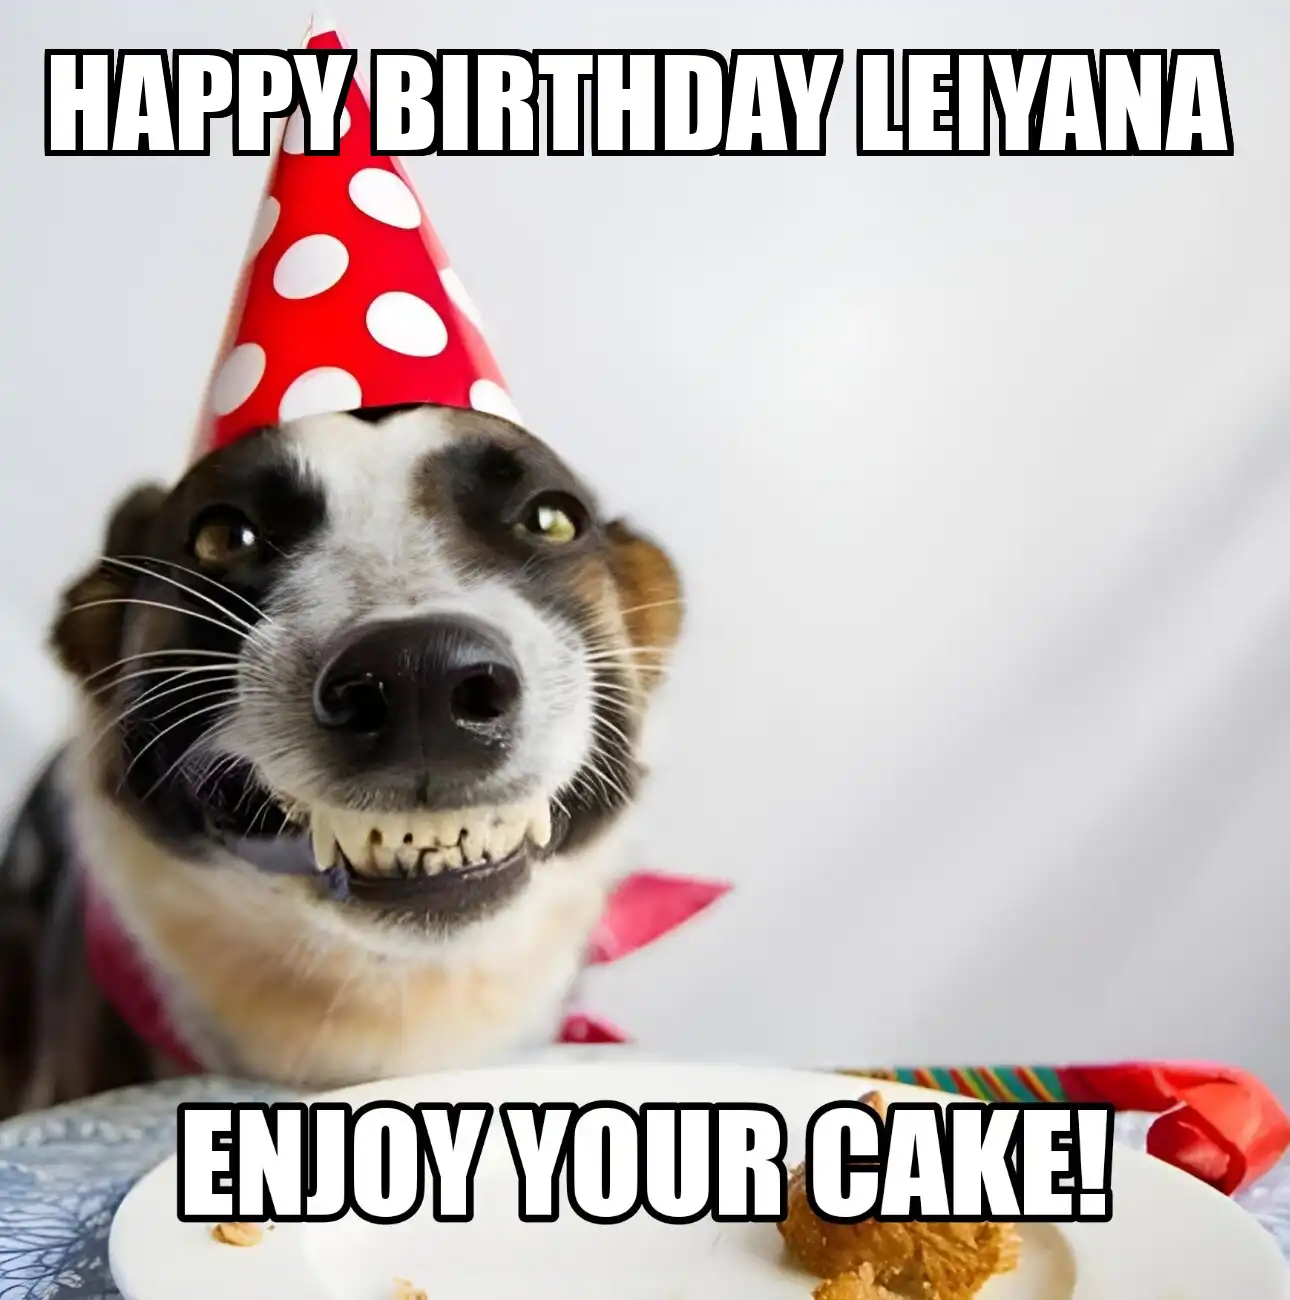 Happy Birthday Leiyana Enjoy Your Cake Dog Meme